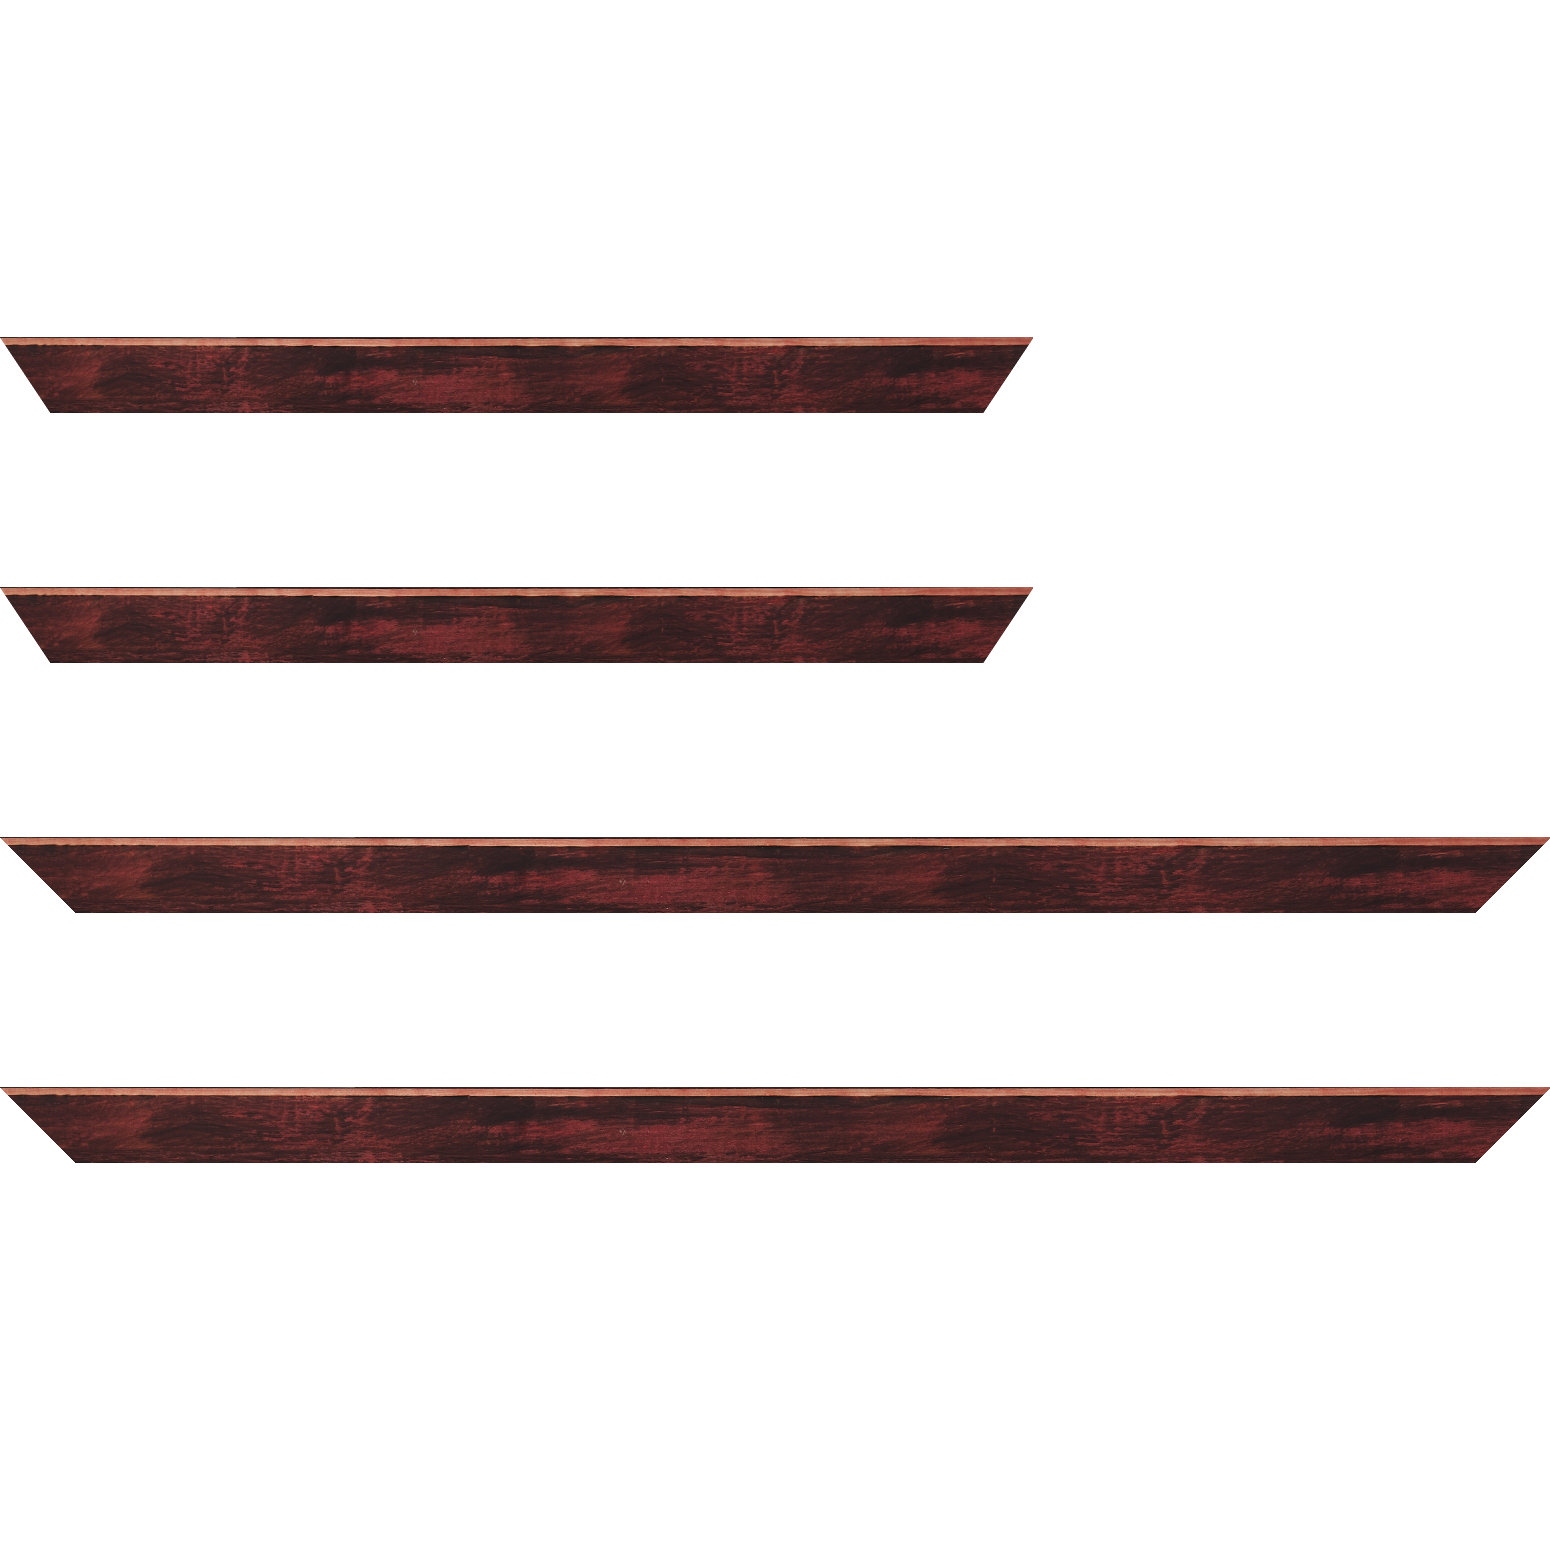 Baguette bois profil arrondi en pente plongeant largeur 2.4cm couleur bordeaux effet ressuyé, angle du cadre extérieur filet naturel - 28x34